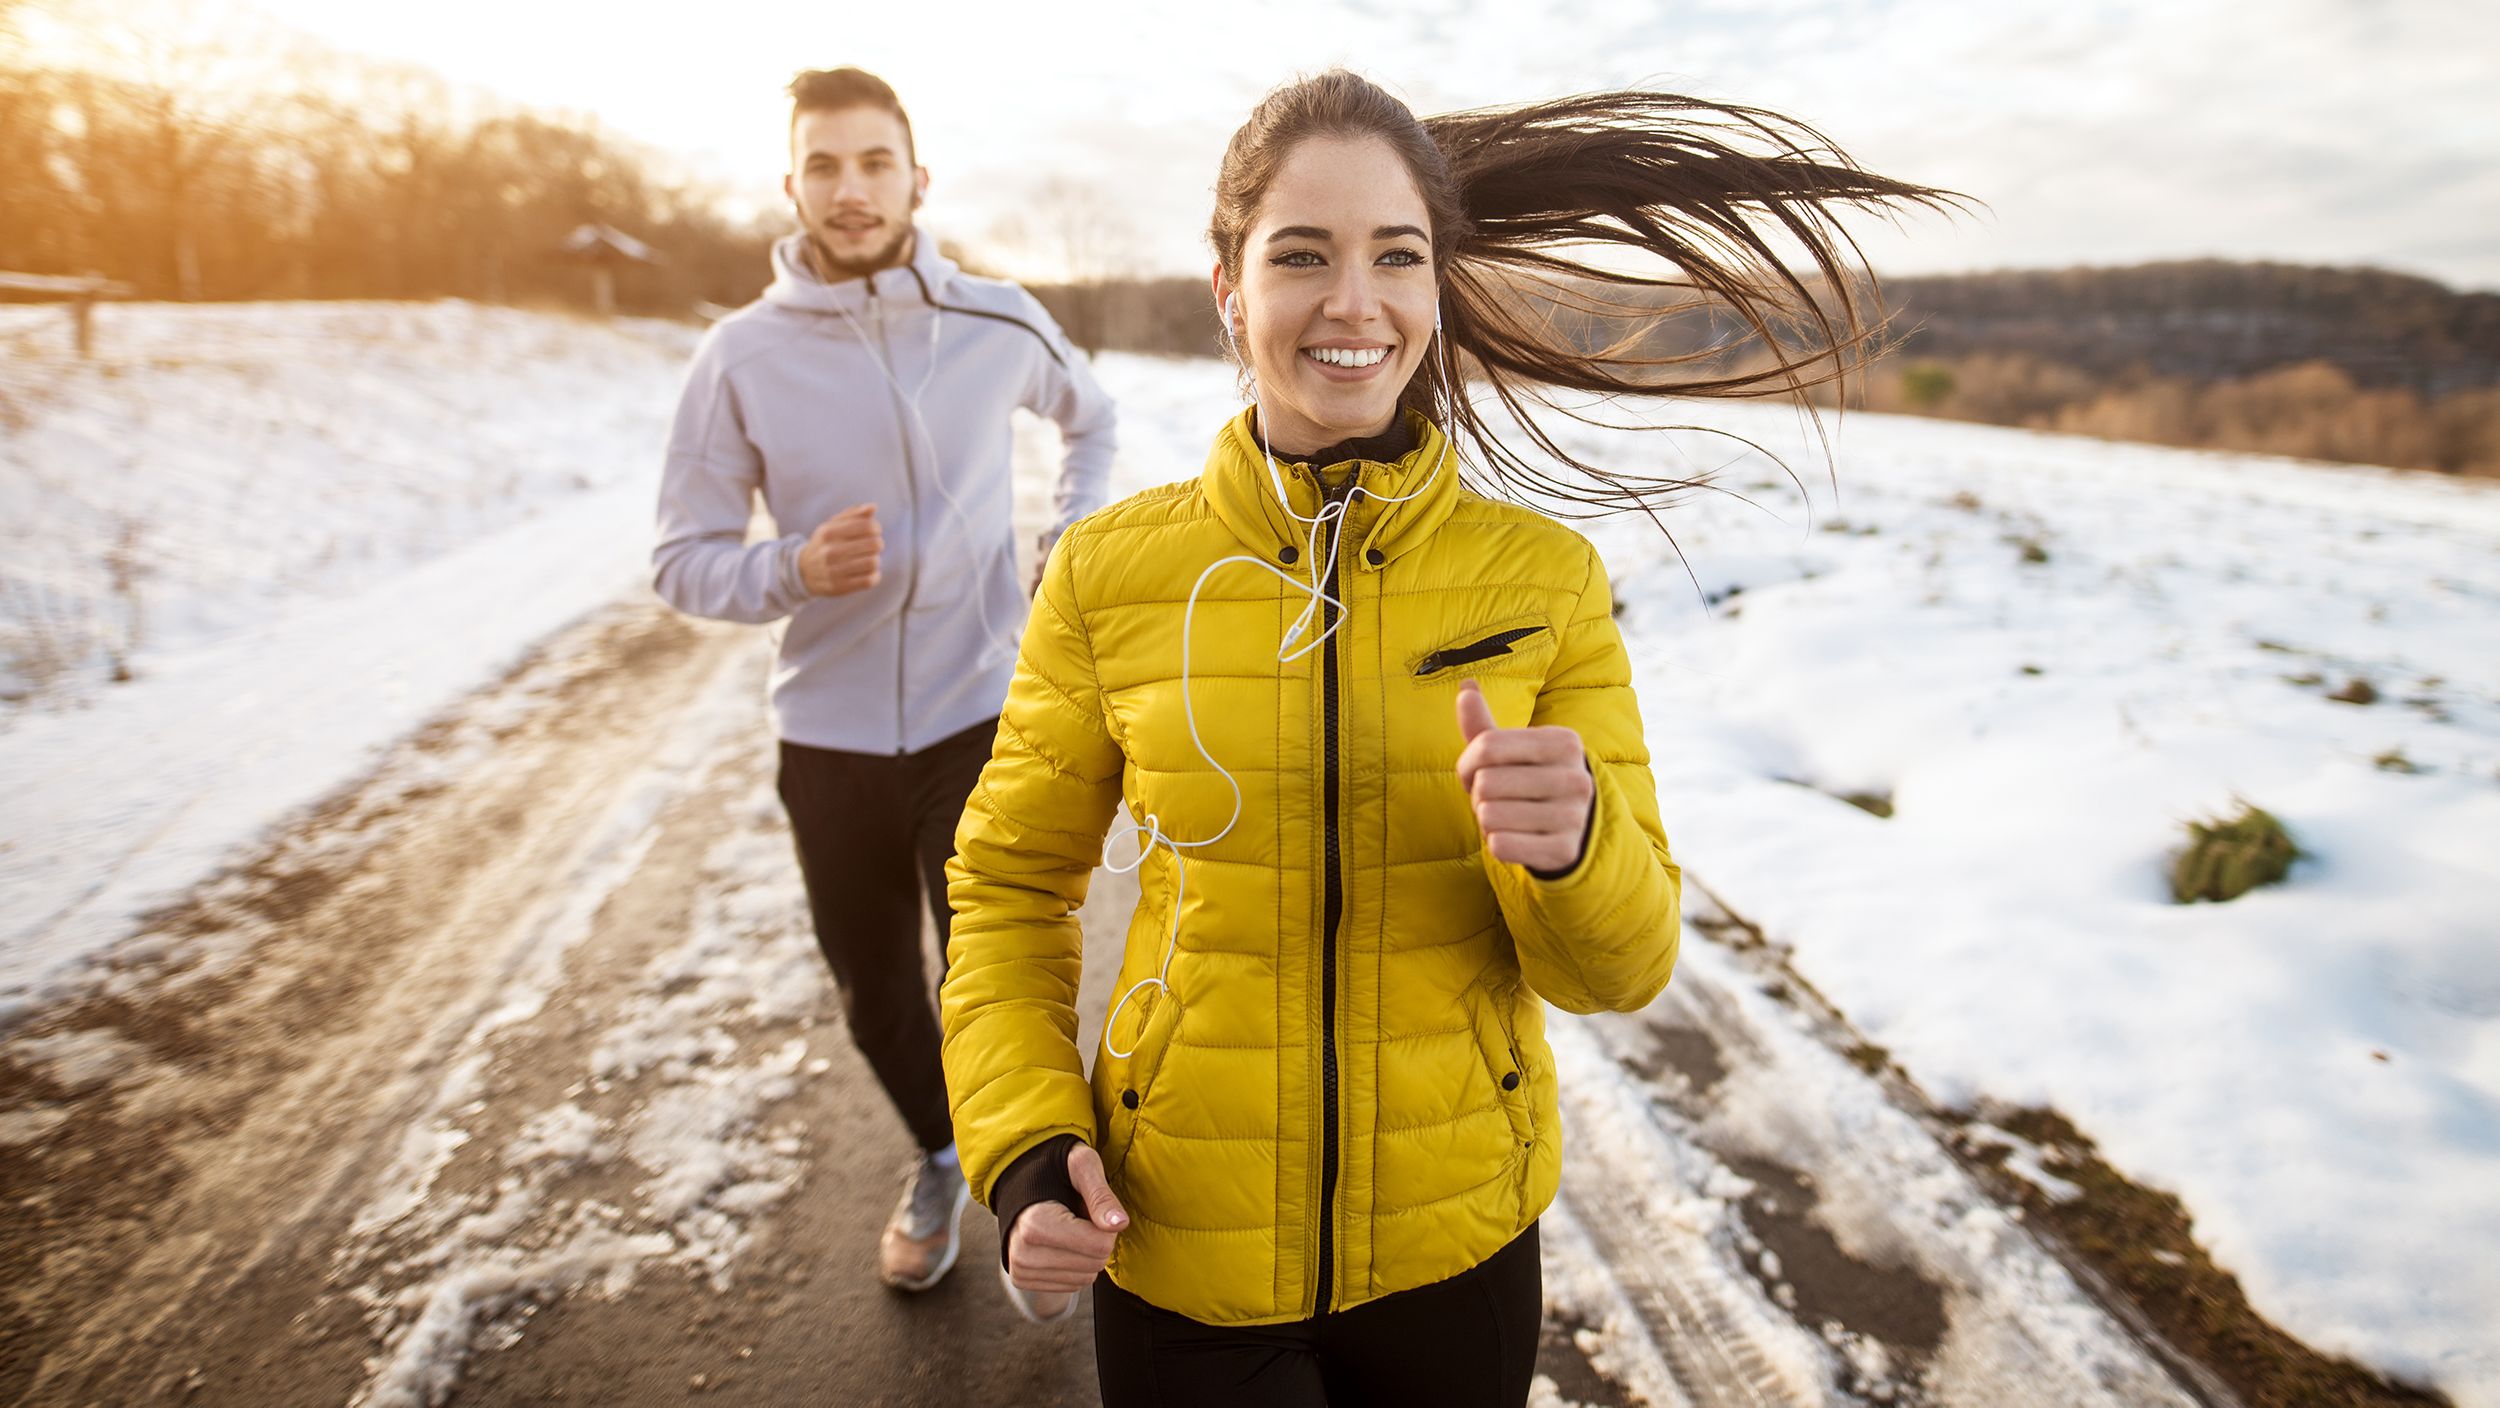 Winter workout gear that'll keep you warm outdoors | CNN Underscored